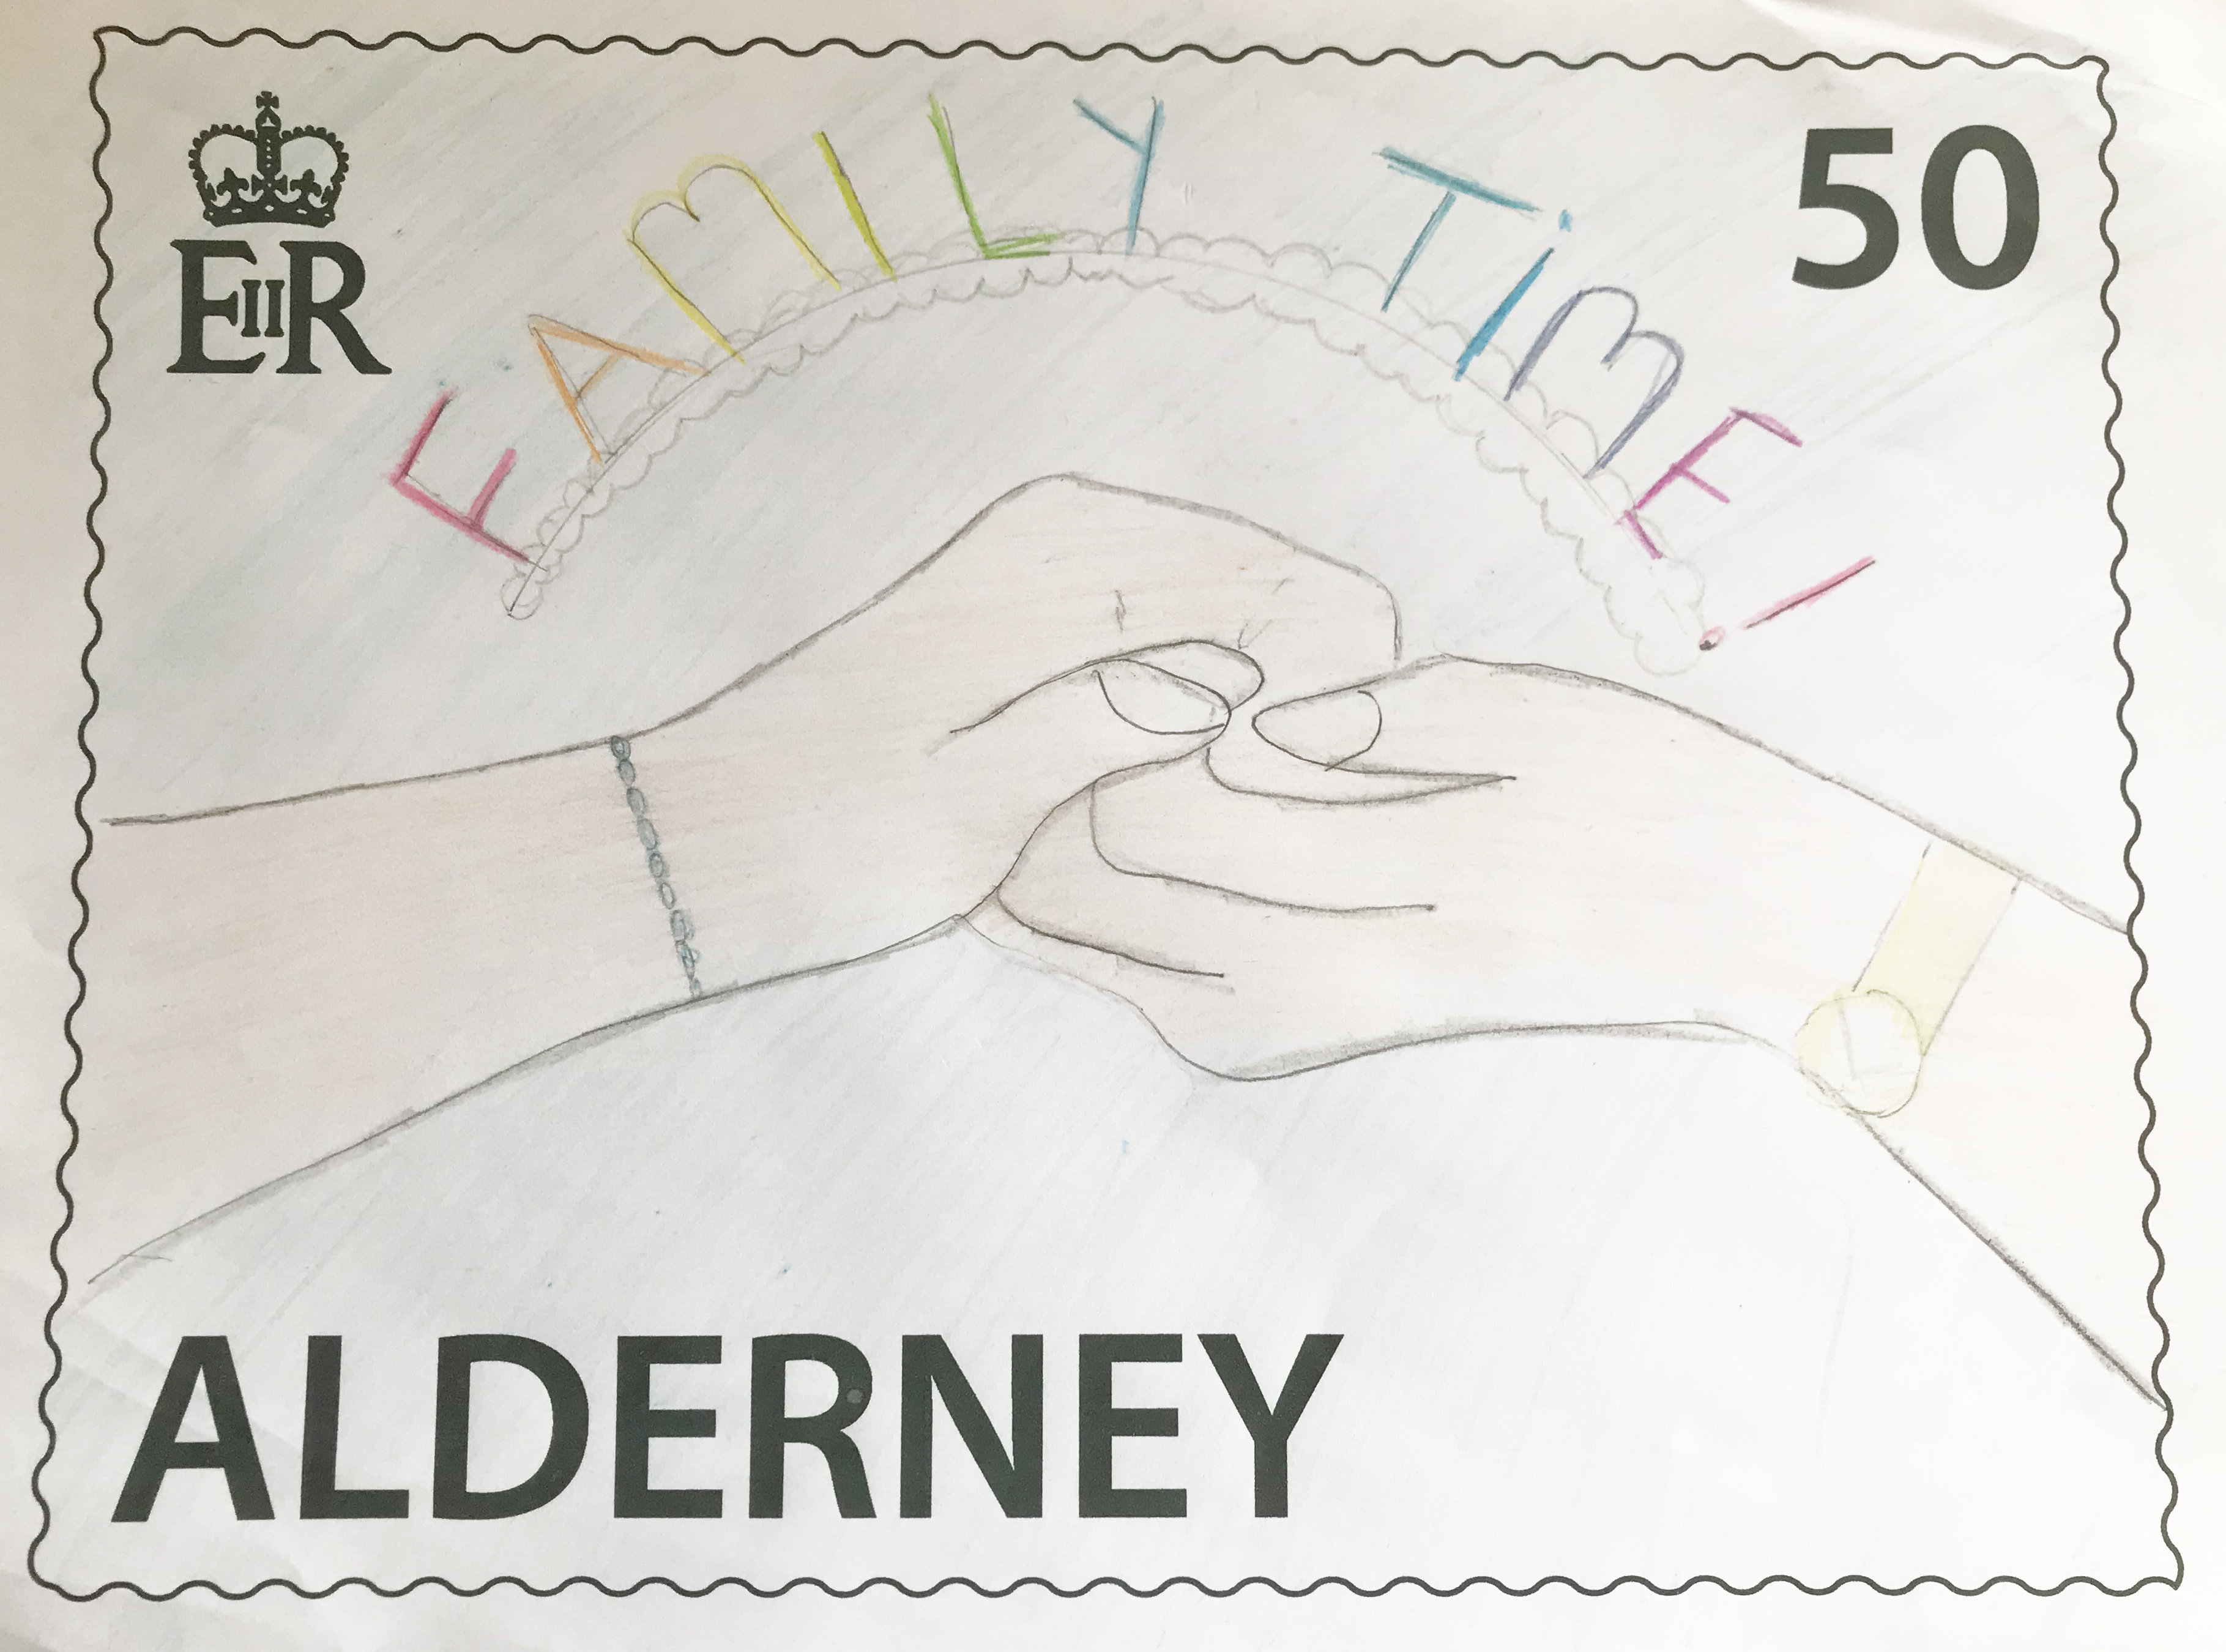 School children's designs chosen for AlderneySpirit stamp competition